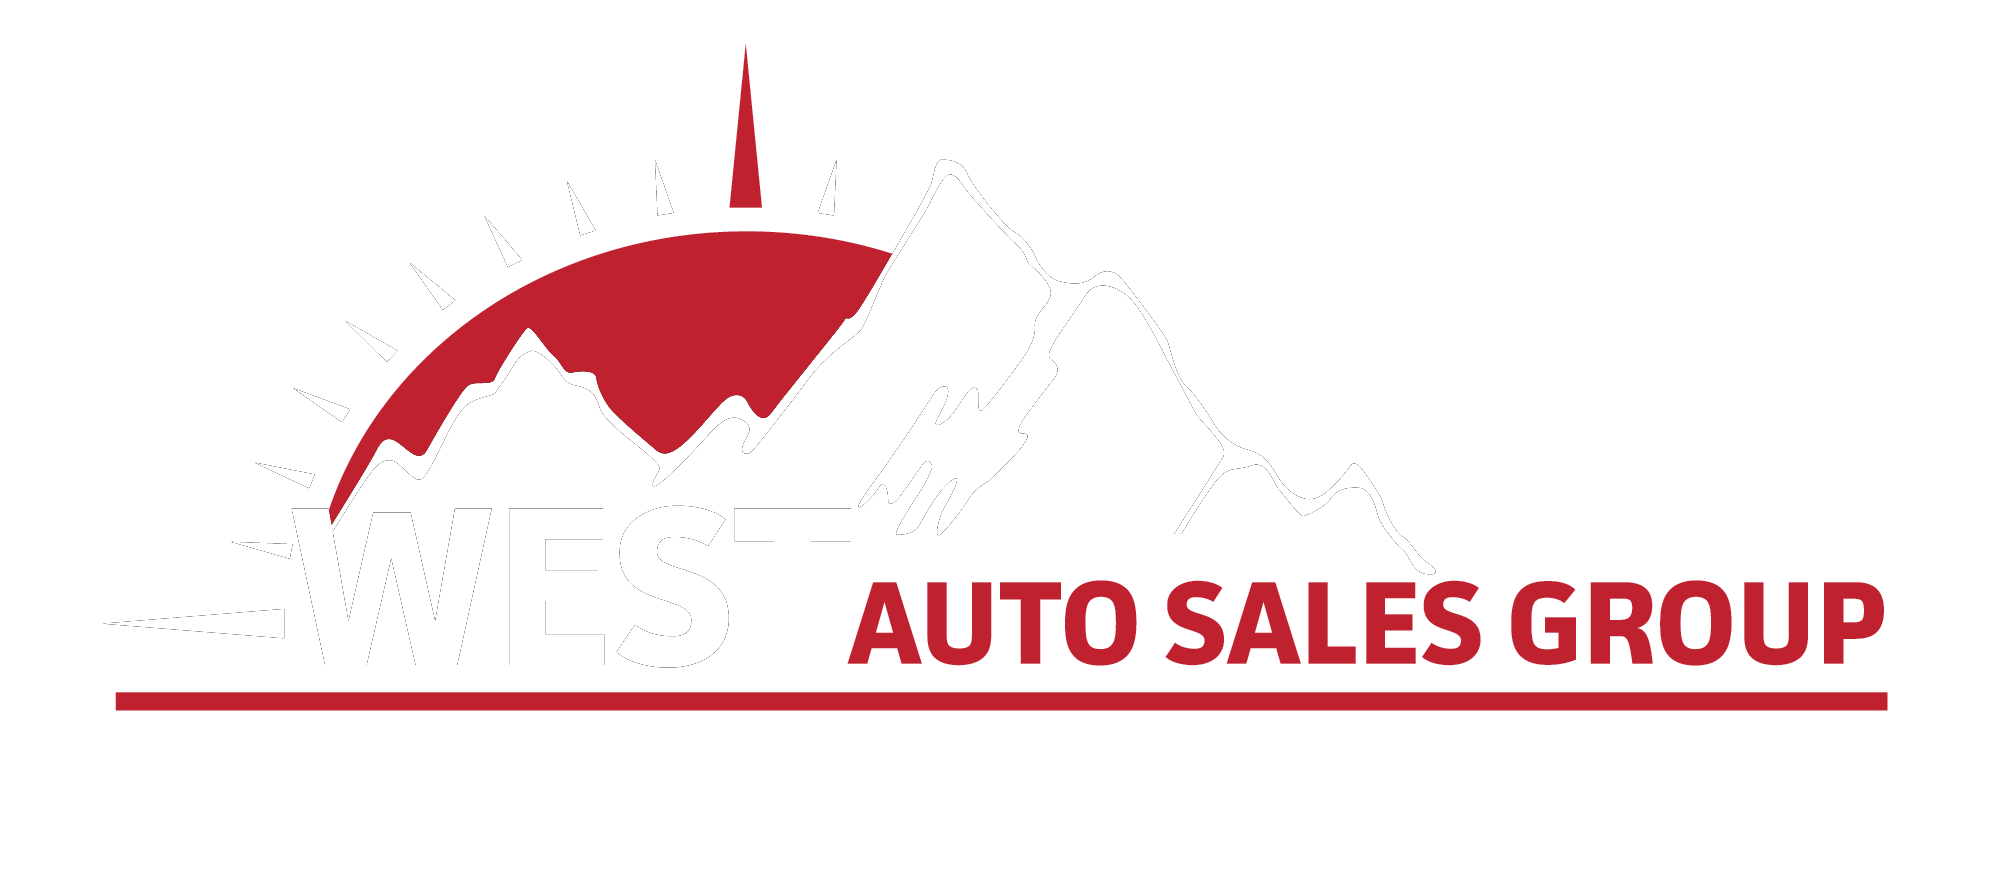 West Auto Sales Group logo